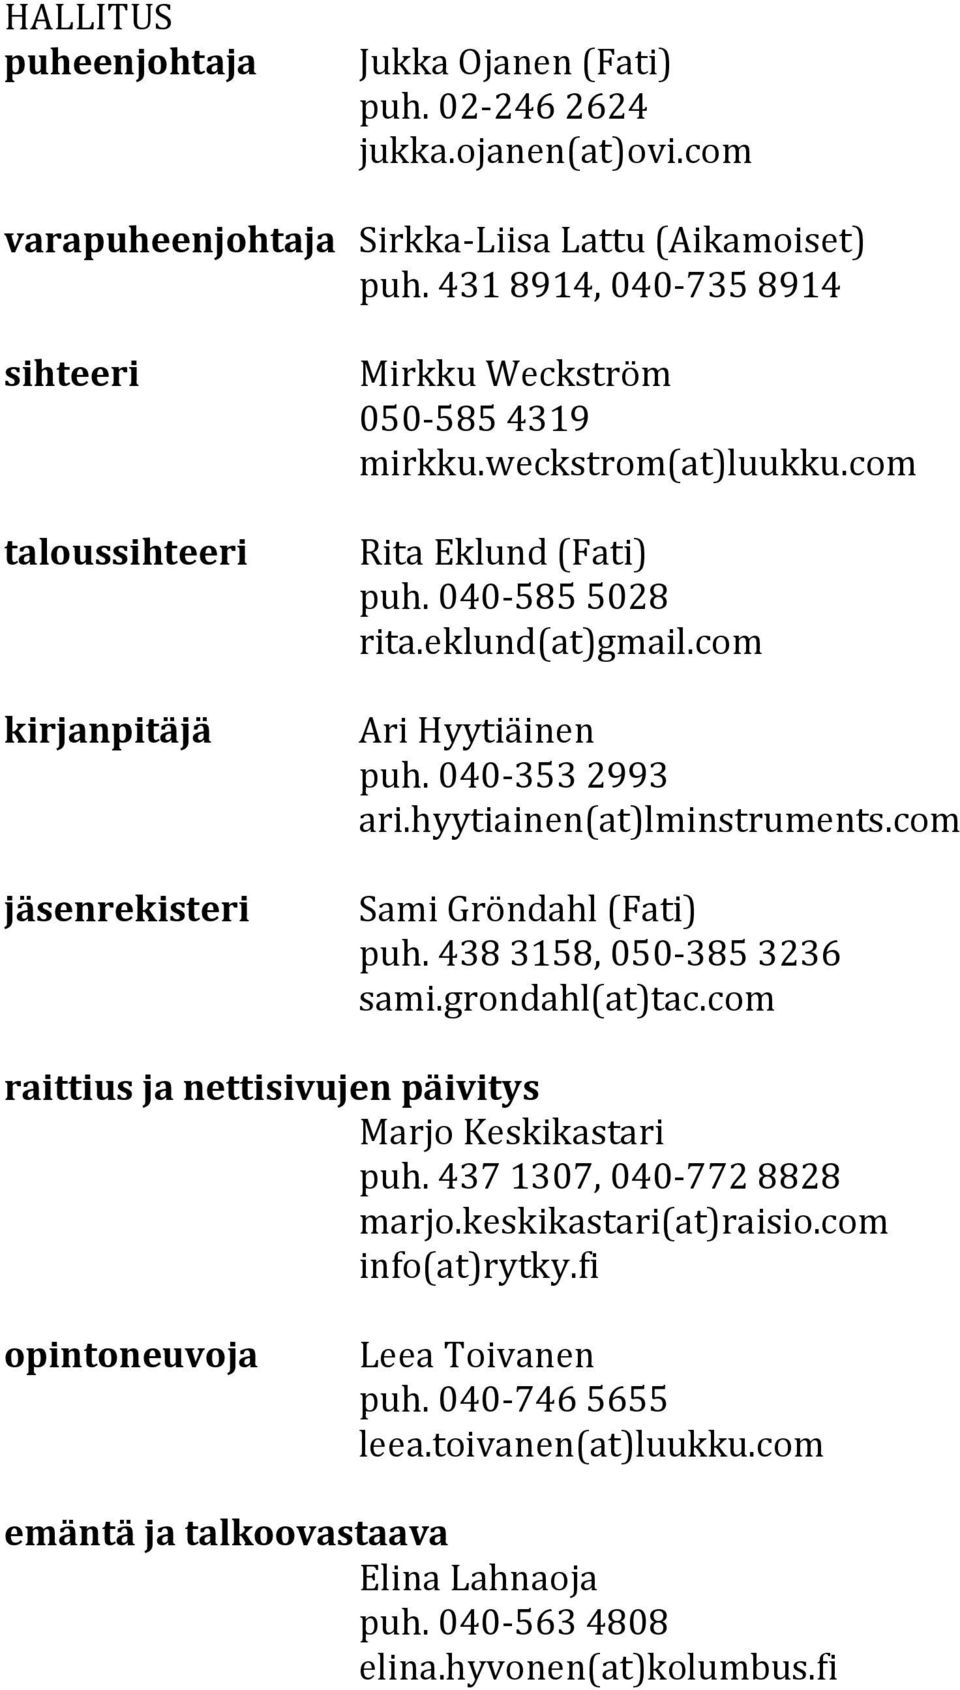 eklund(at)gmail.com Ari Hyytiäinen puh. 040-353 2993 ari.hyytiainen(at)lminstruments.com Sami Gröndahl (Fati) puh. 438 3158, 050-385 3236 sami.grondahl(at)tac.